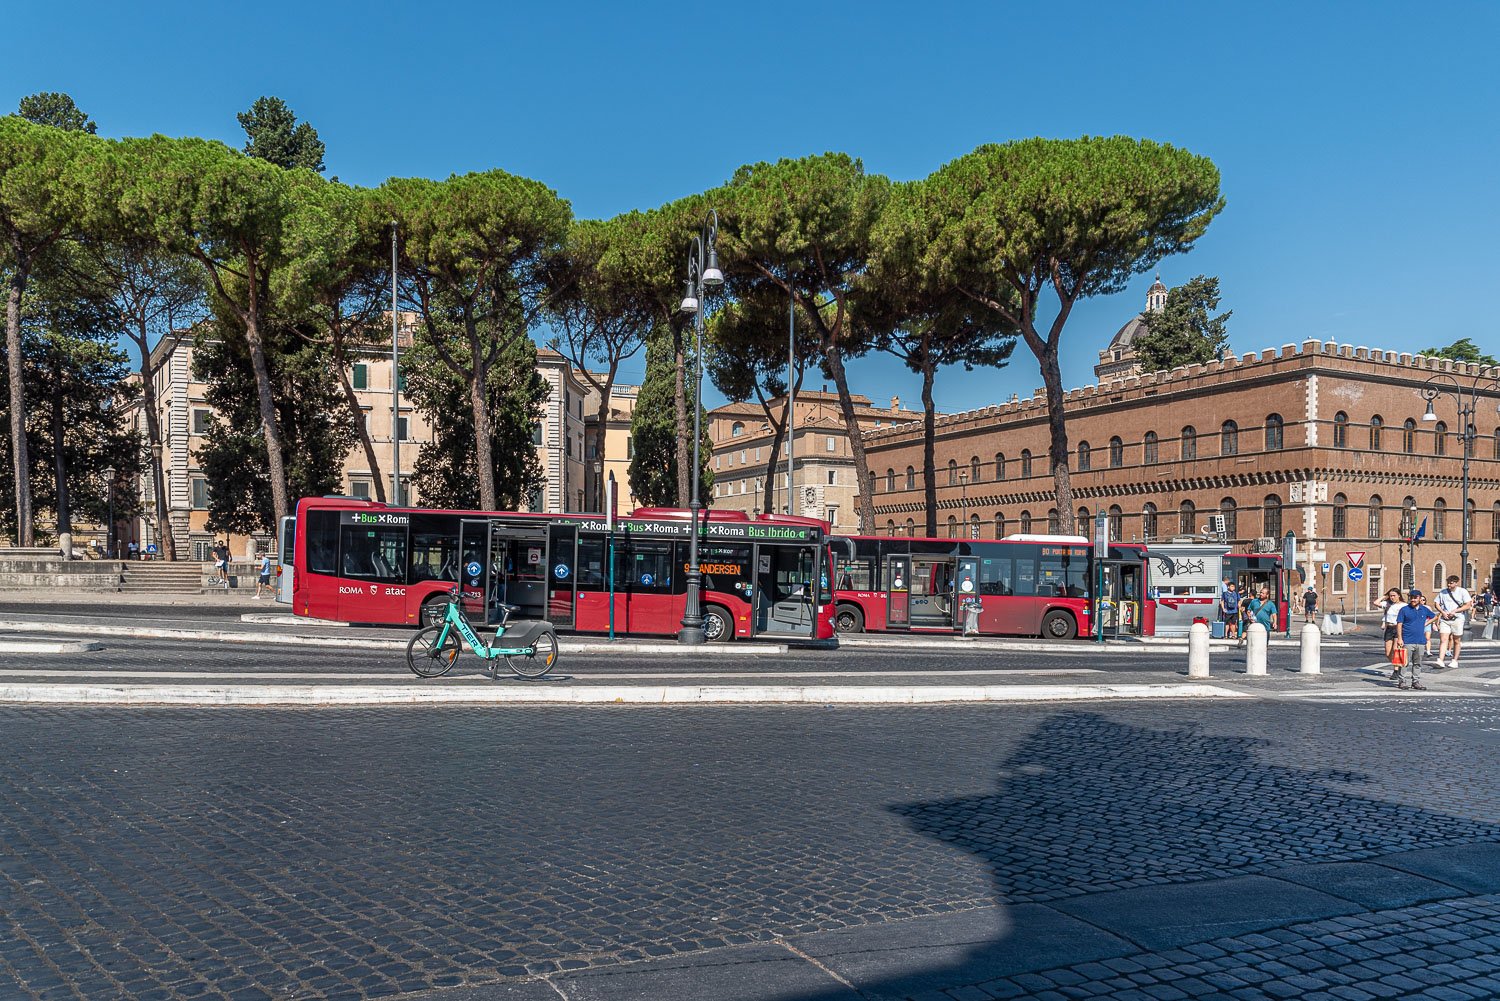 Rome City Bus - Bus Stop